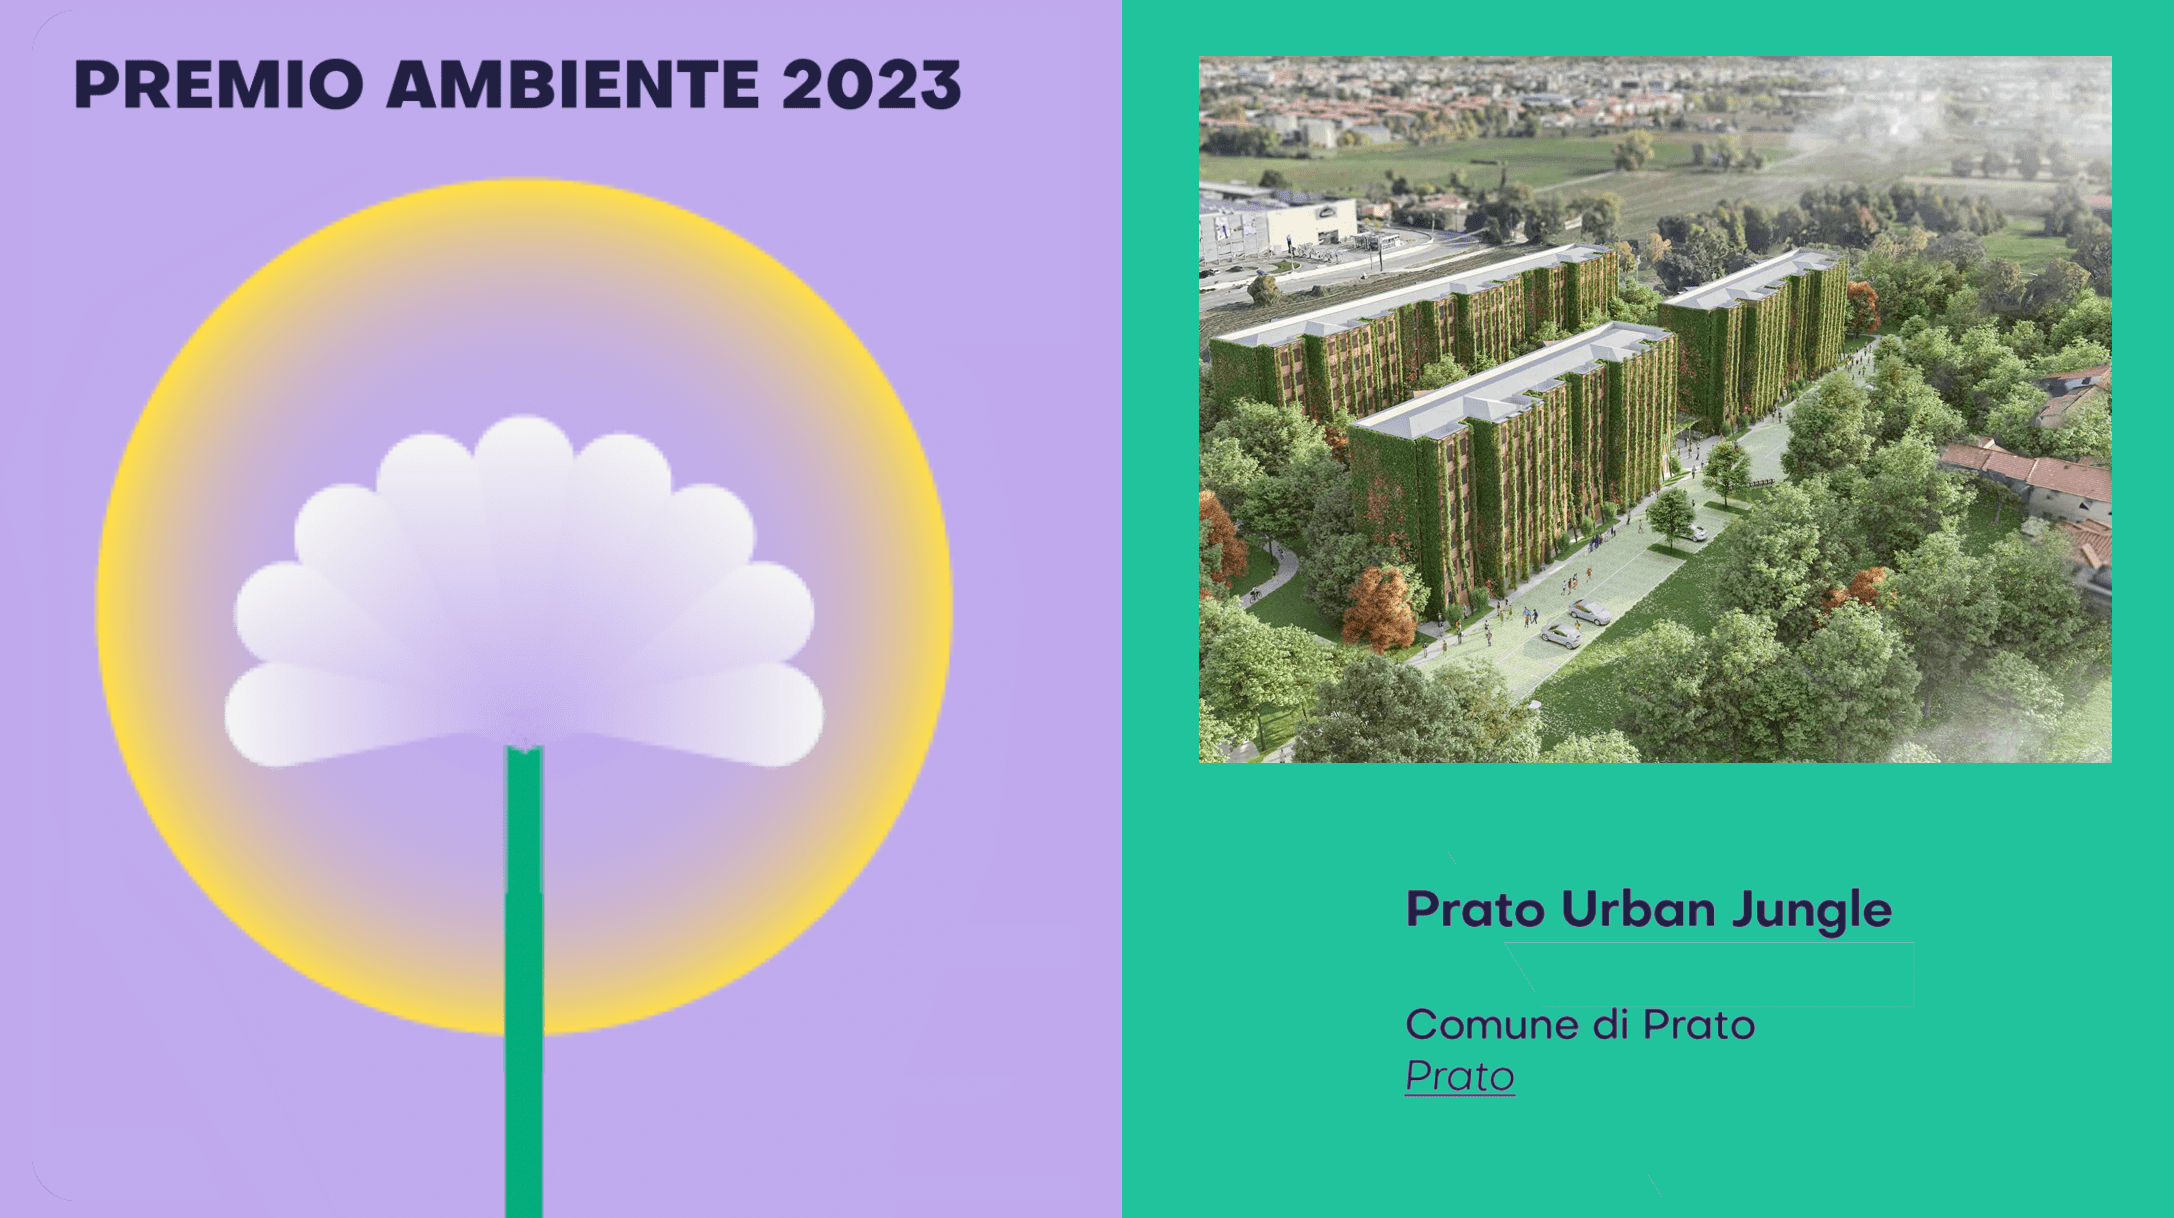 prato urban jungle vince il premio ambiente 2023